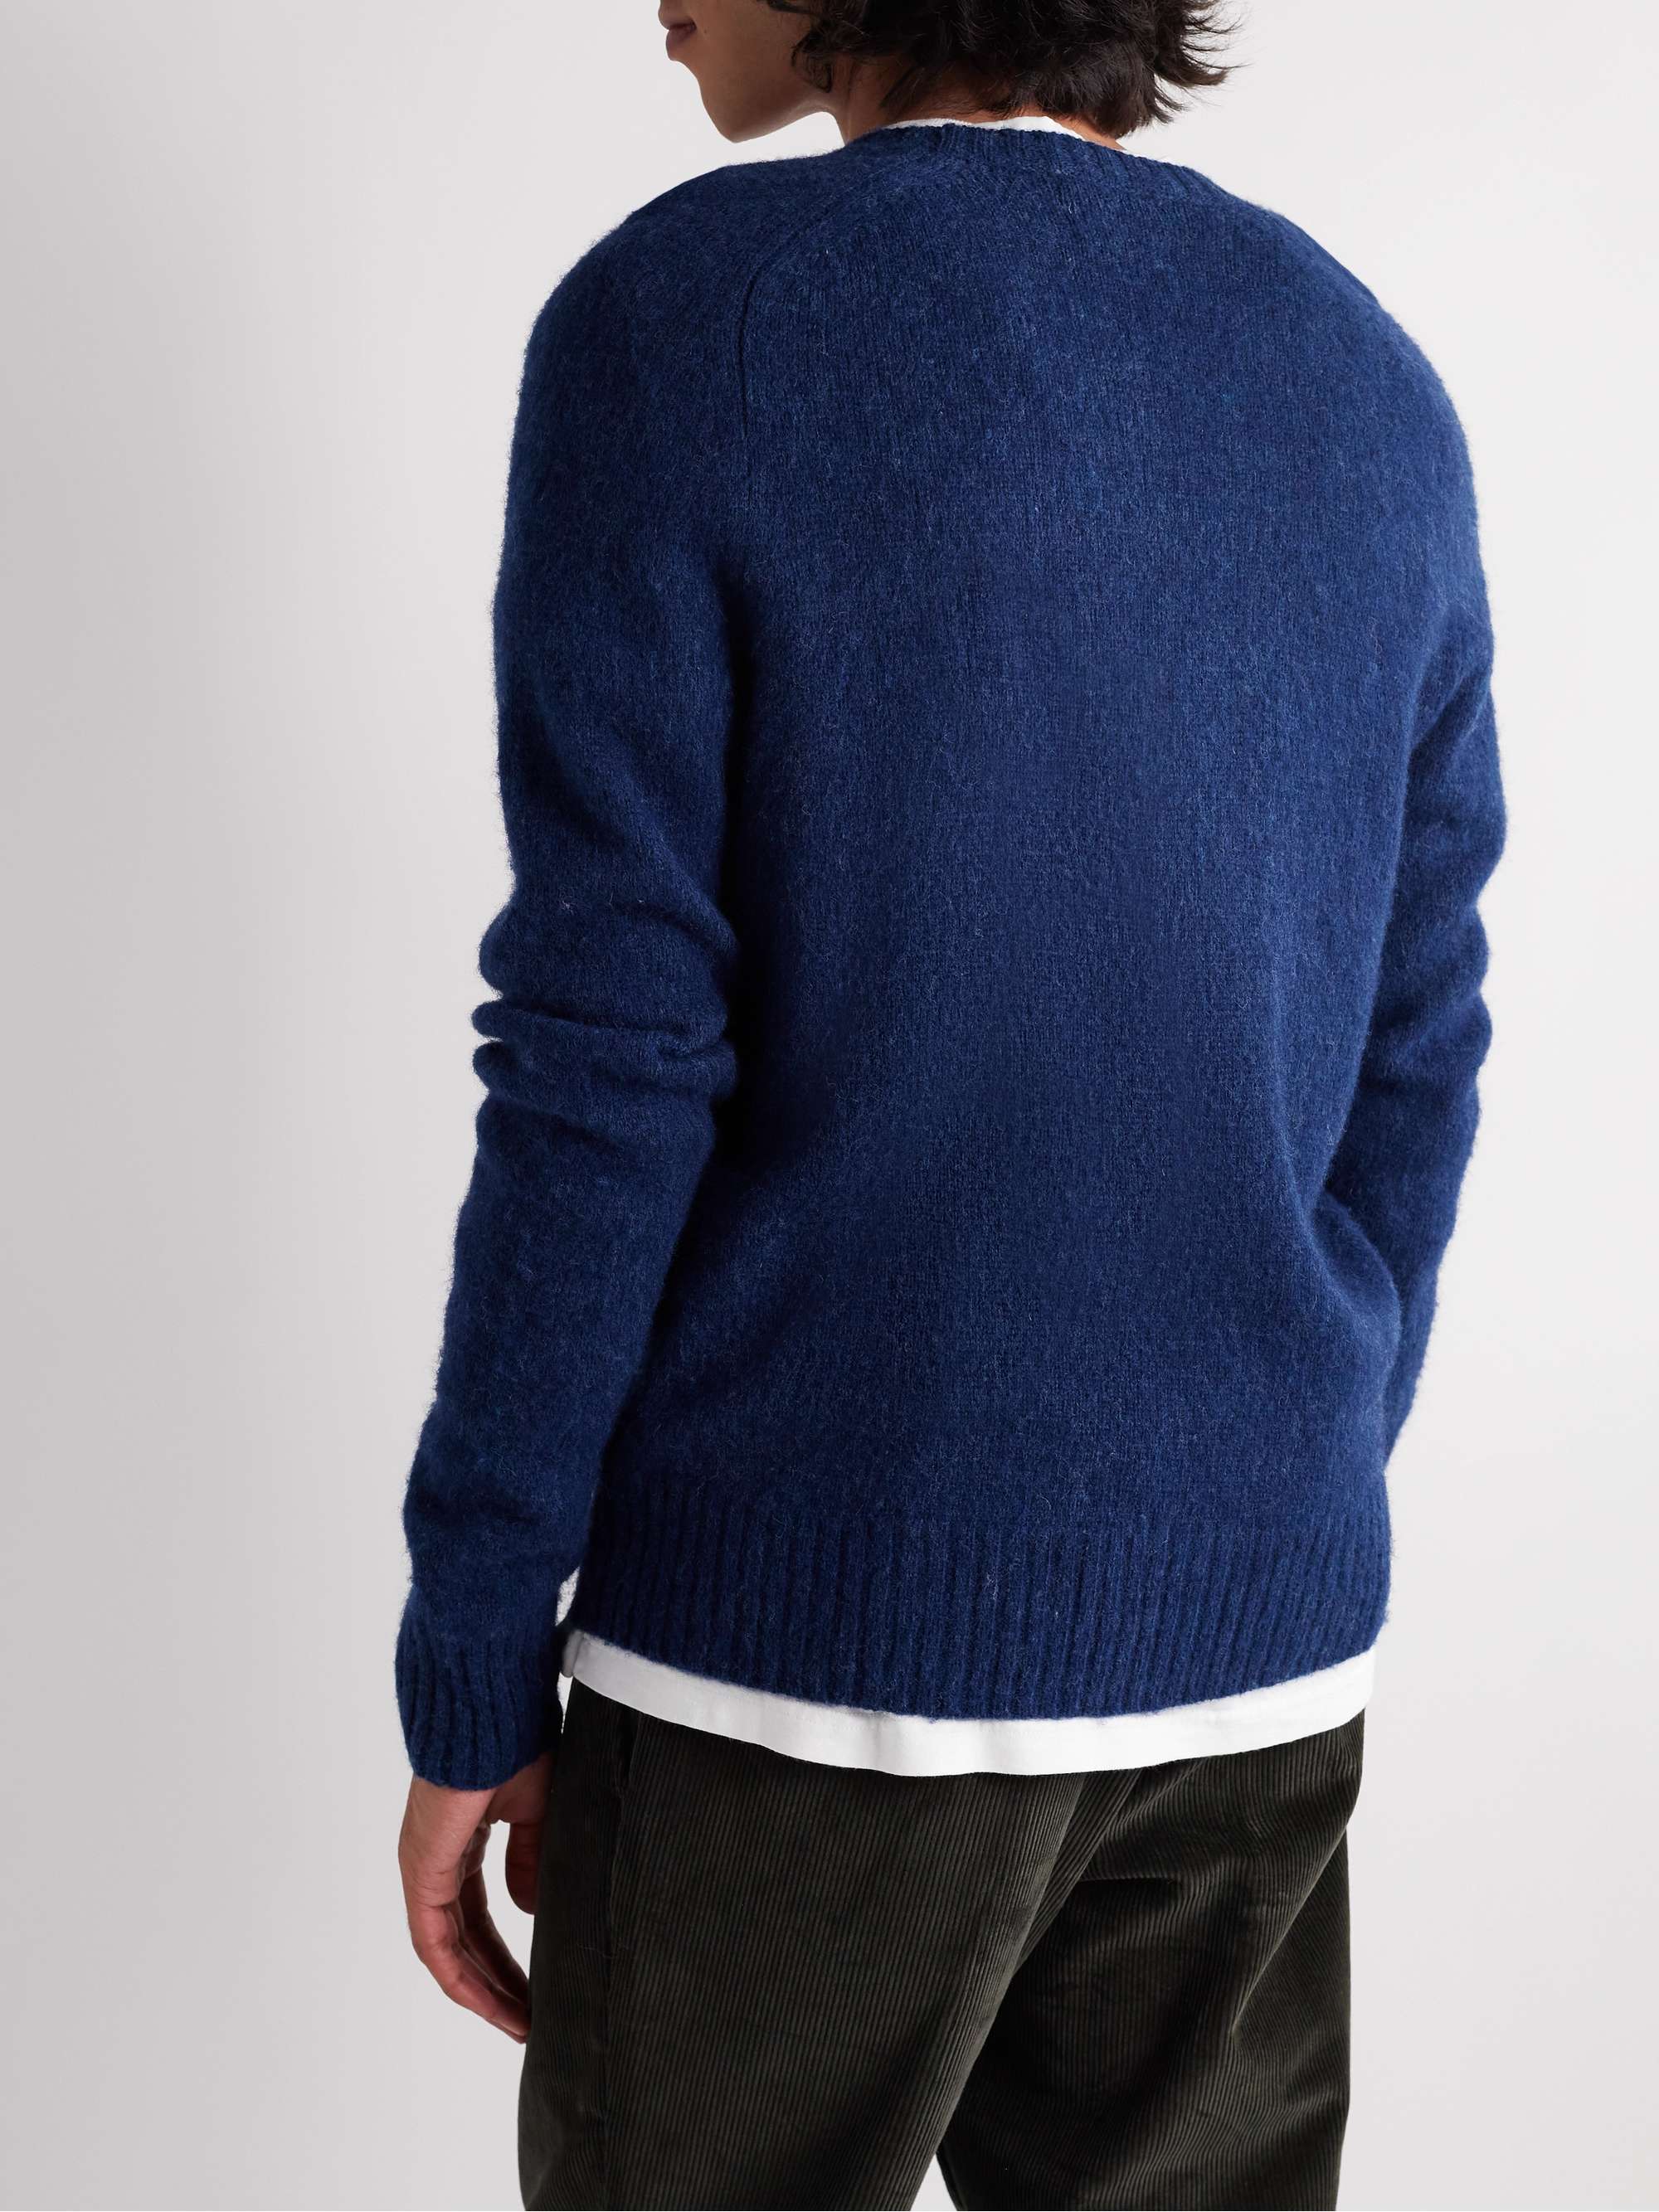 J.CREW Wool Sweater for Men | MR PORTER